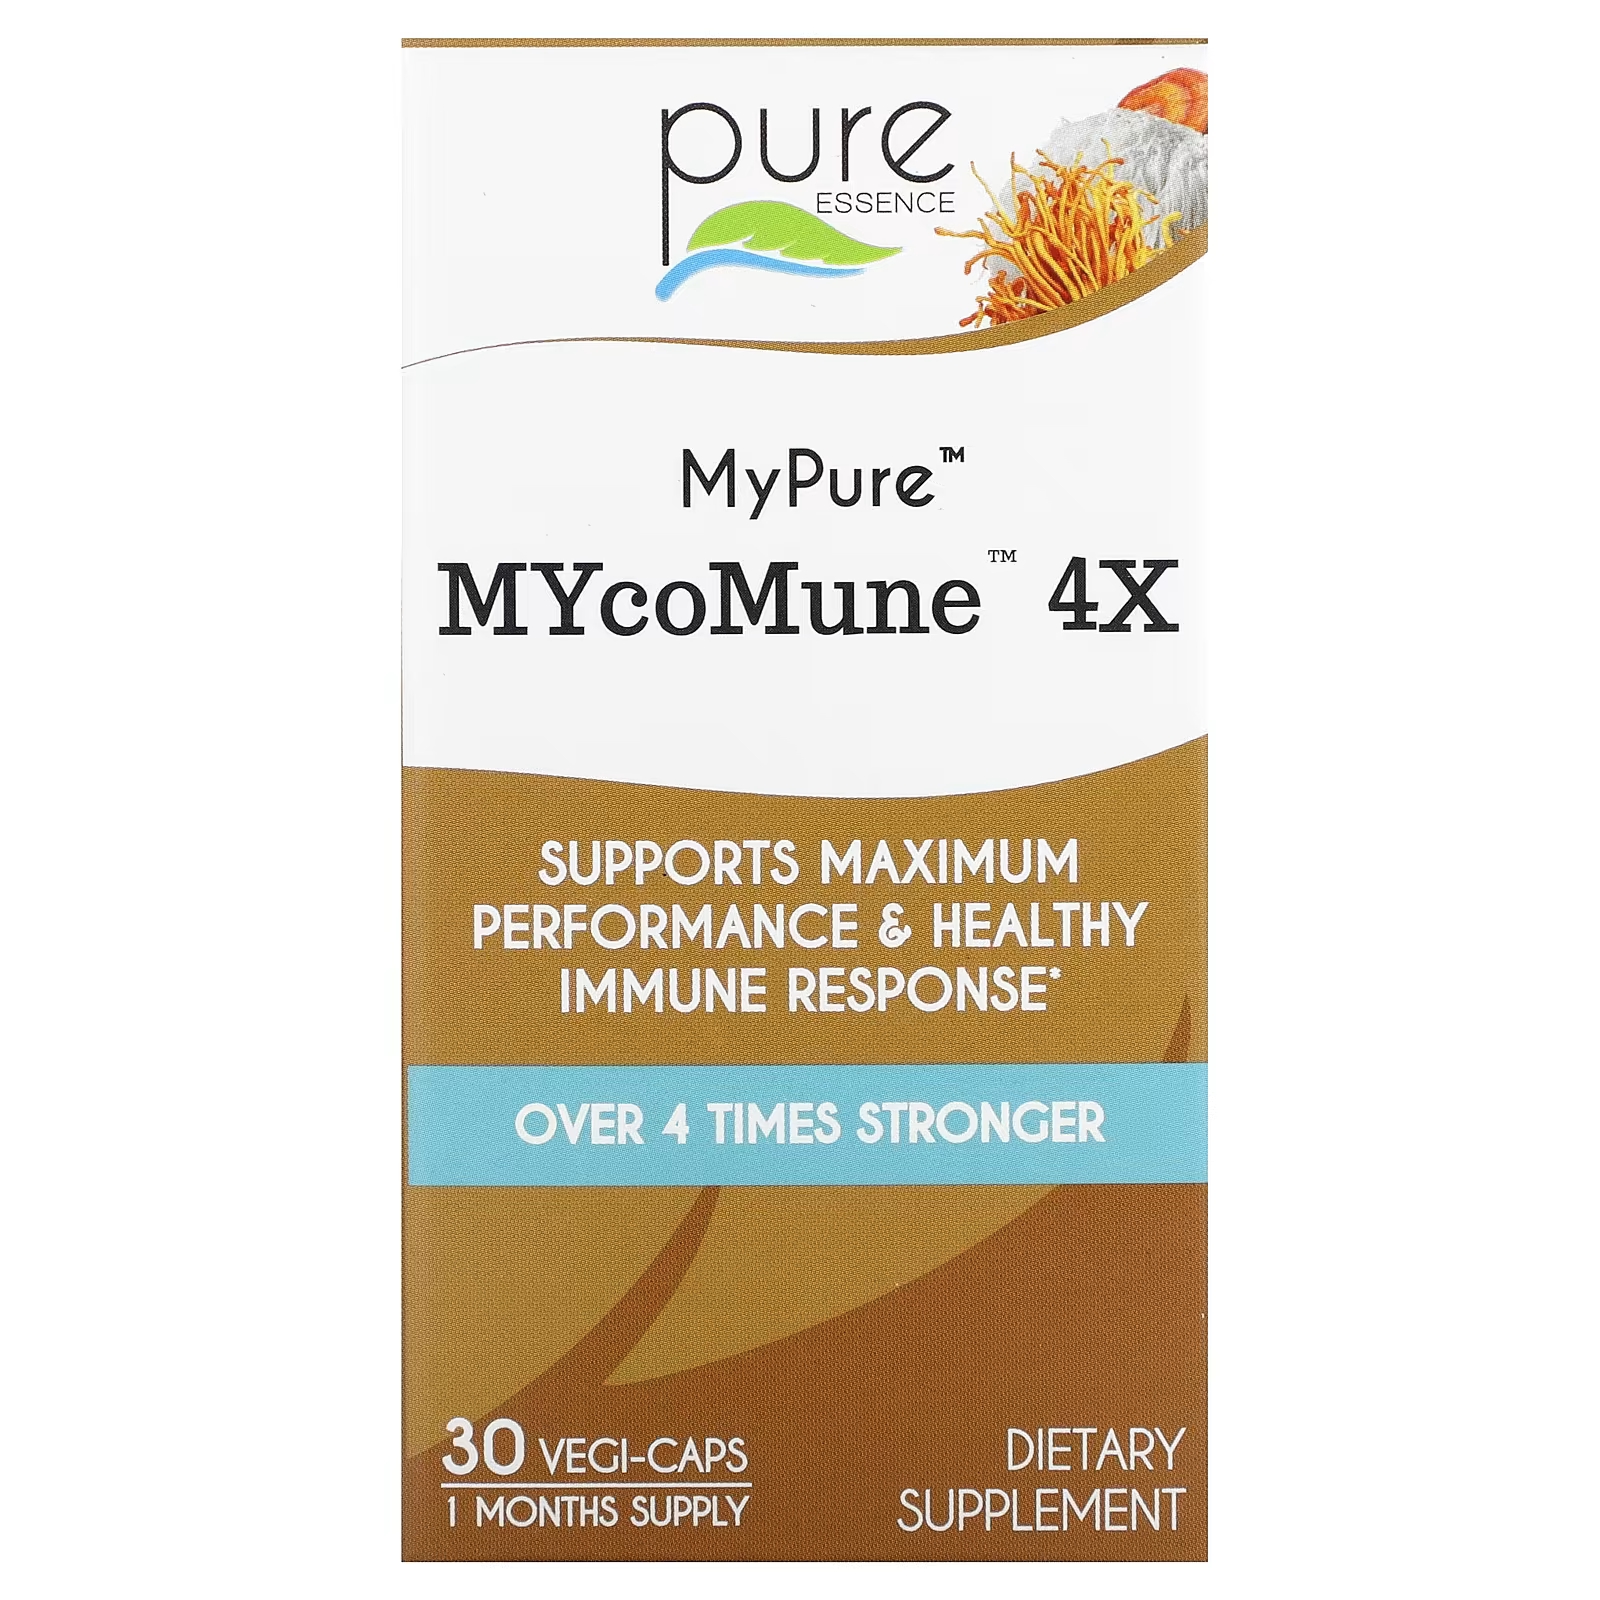 Пищевая добавка Pure Essence MyPure MYcoMune 4X без ГМО, 30 растительных капсул 1 упаковка грибной комплекс лев грива чага кордицепс рейши майтаке шиитаке 500 мг x270капсулы